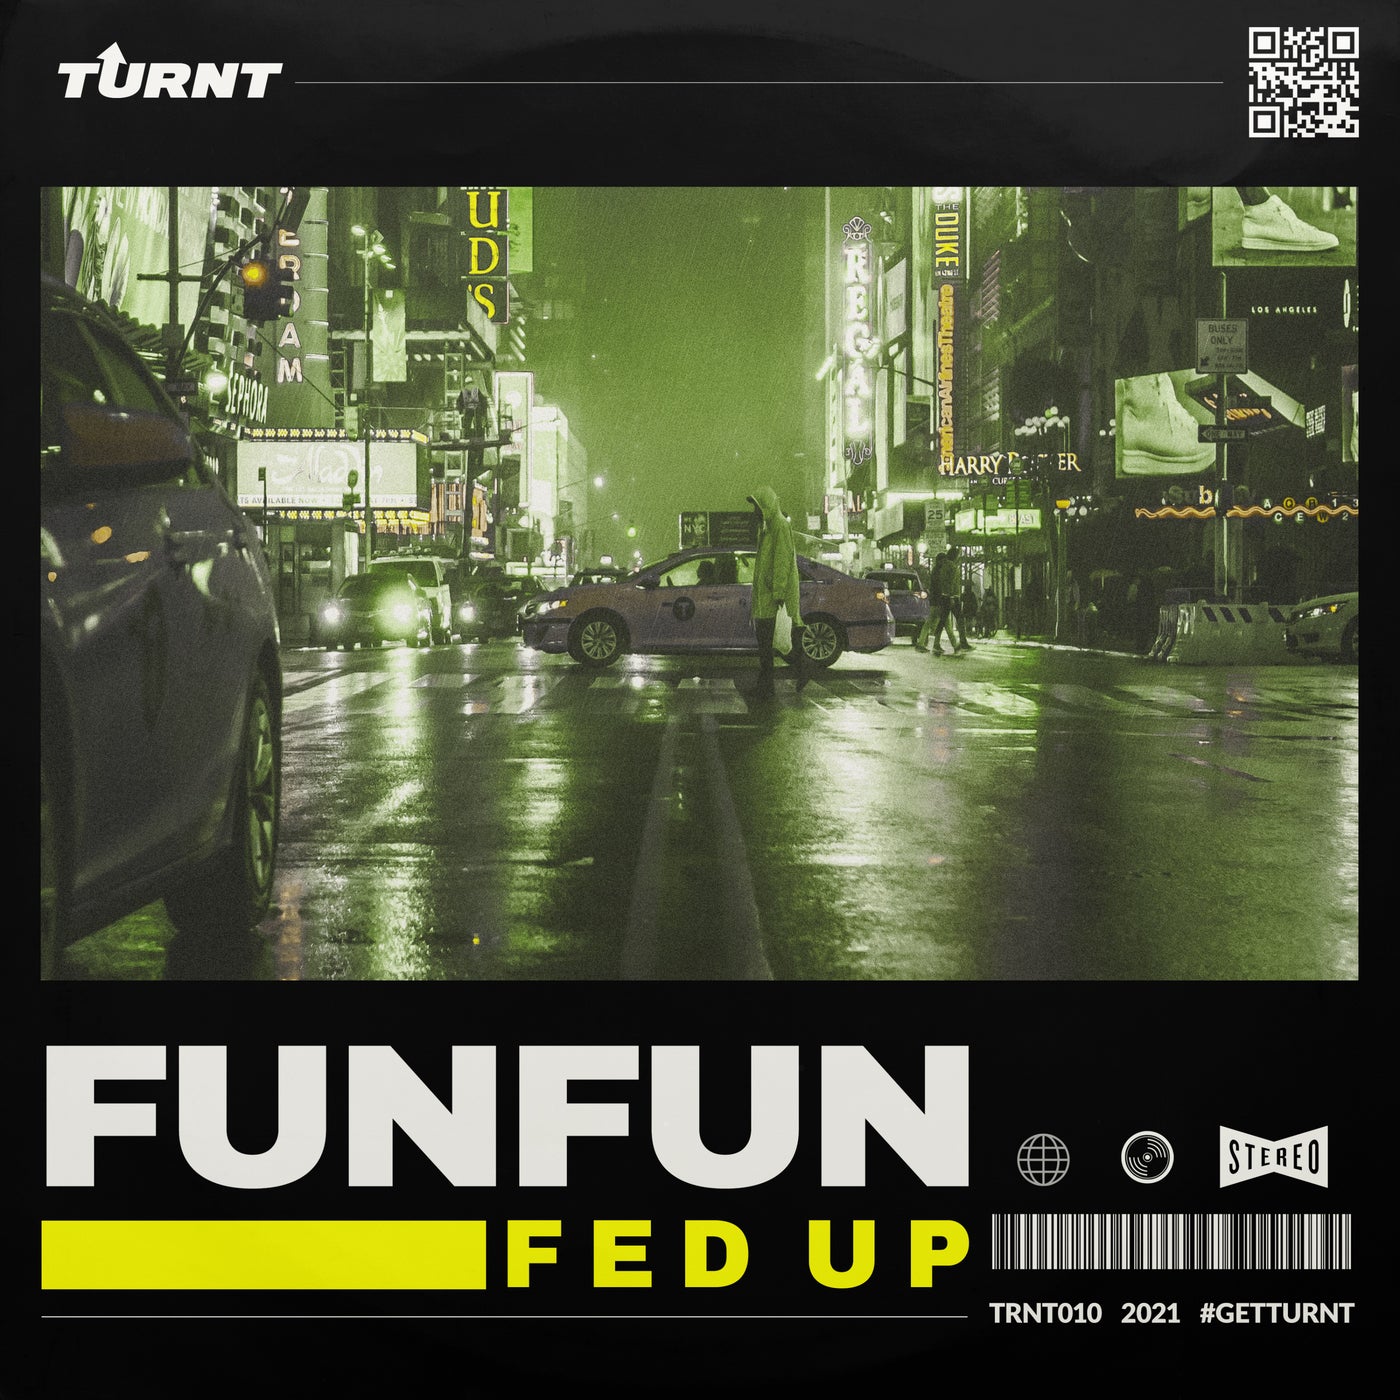 FUNFUN music download - Beatport